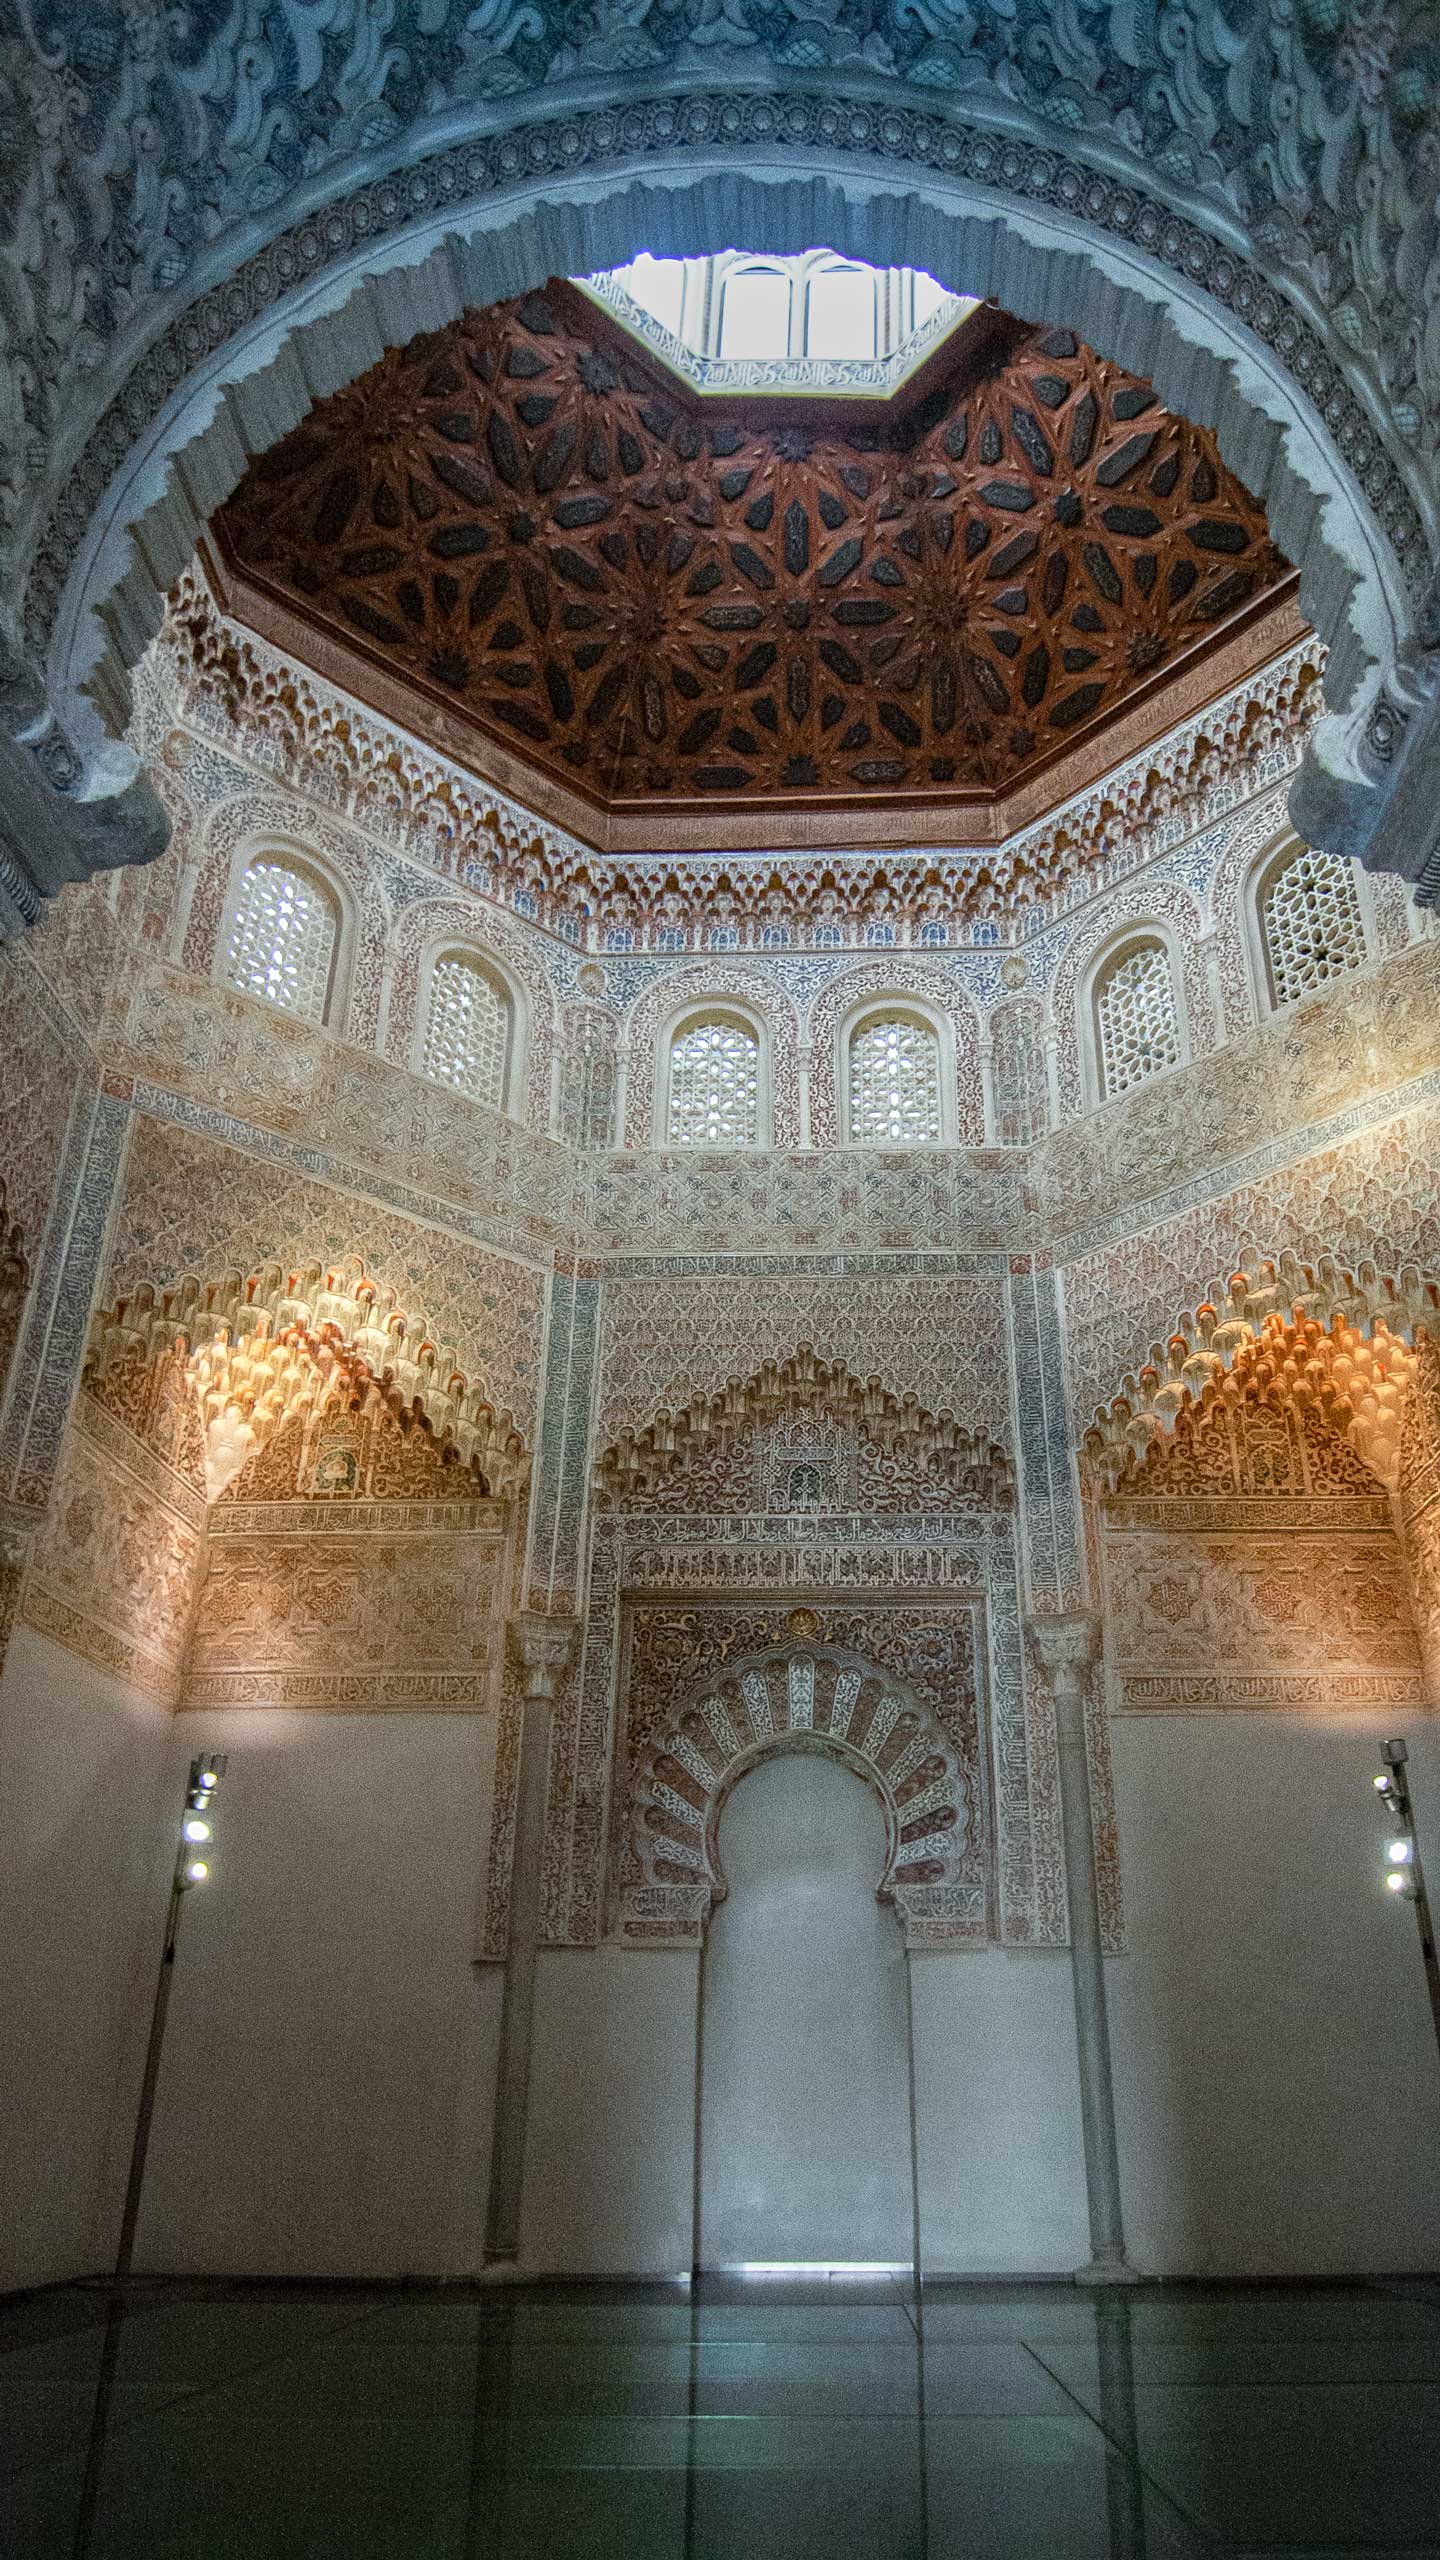 Restoration - Madrasah Palace, Praying room and mihrab